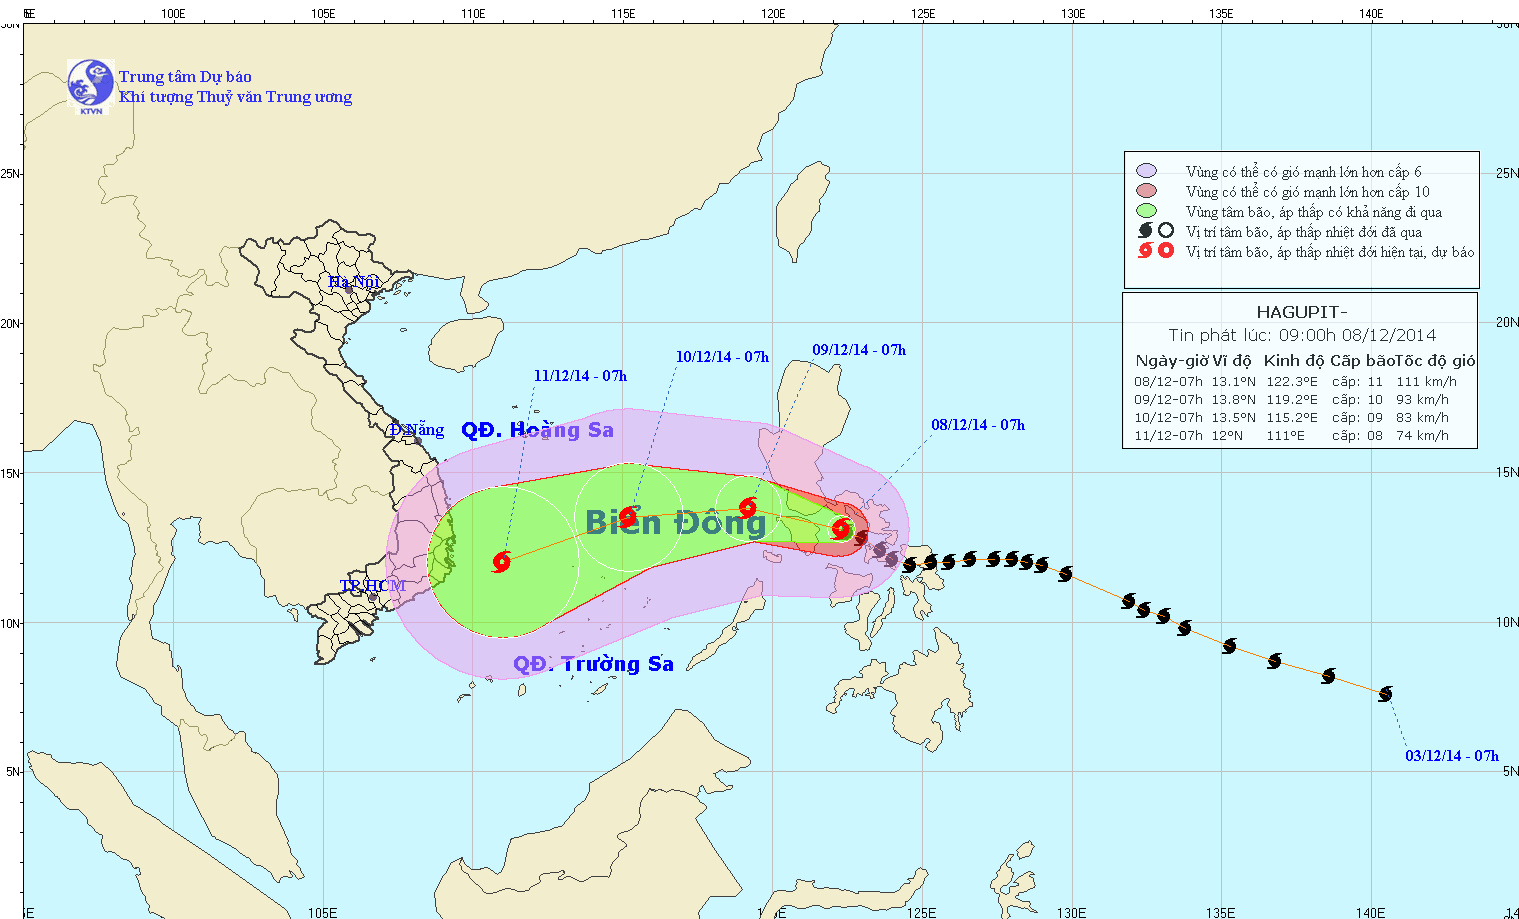 Tin bão gần biển Đông (Cơn bão Hagupit) lúc 09h00 ngày 08/12/2014)